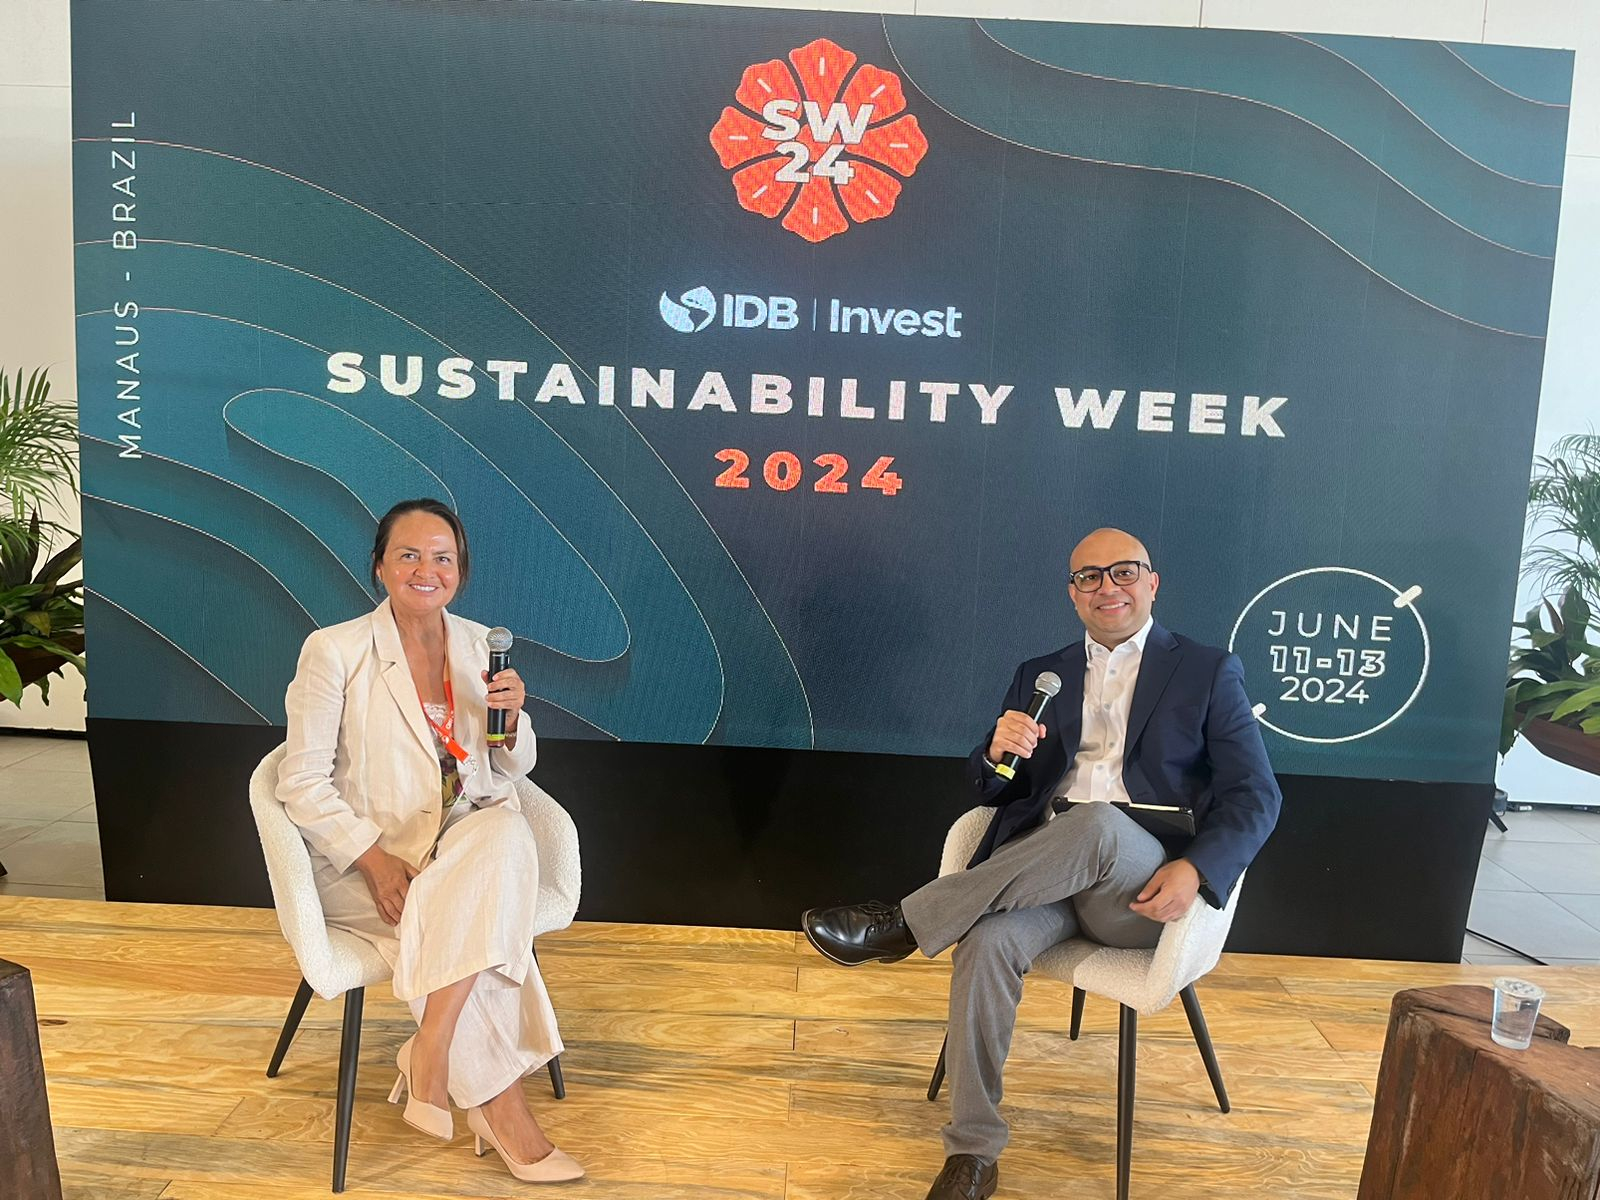 
                                 Rosario Bazán de Danper destaca en panel sobre sistemas alimentarios sostenibles en la Semana de la Sostenibilidad del BID Invest 
                            